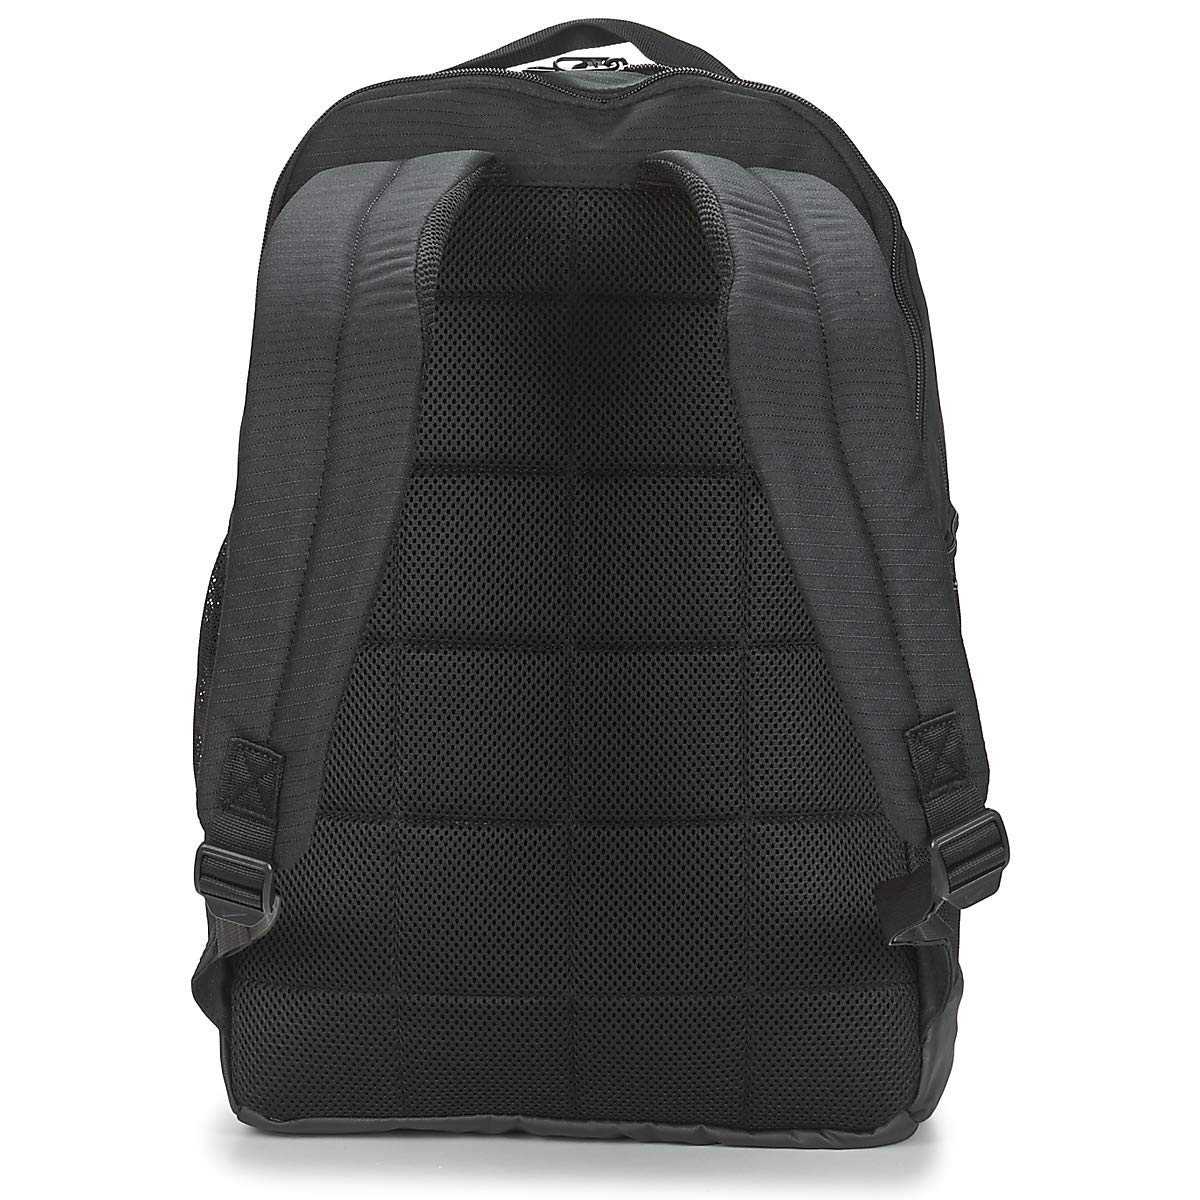 Nike Brasilia Medium Training Backpack